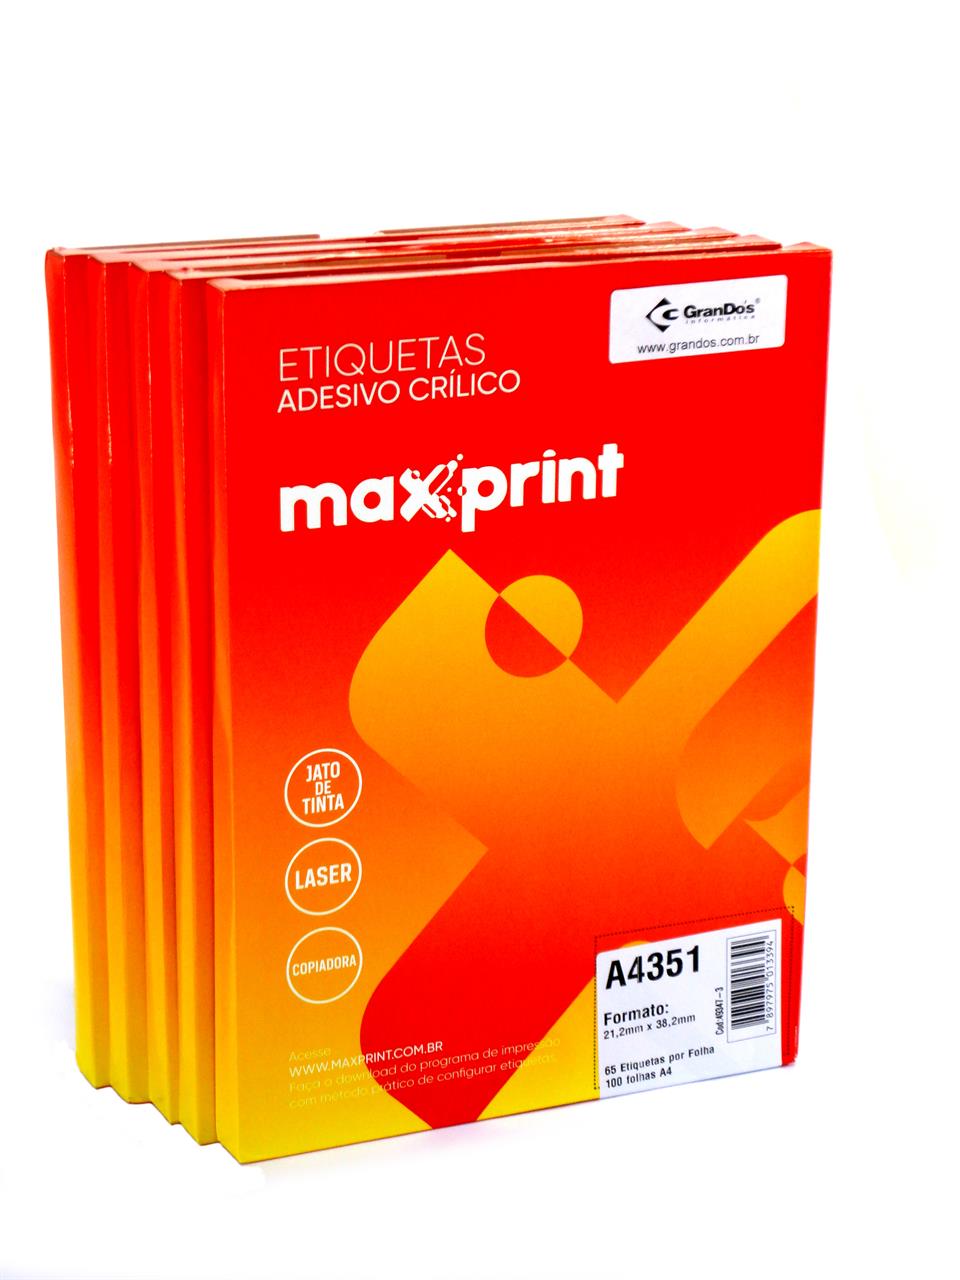 Etiquetas A4351 21,2mm x 38,2mm no Pack com 5 Caixas Maxprint